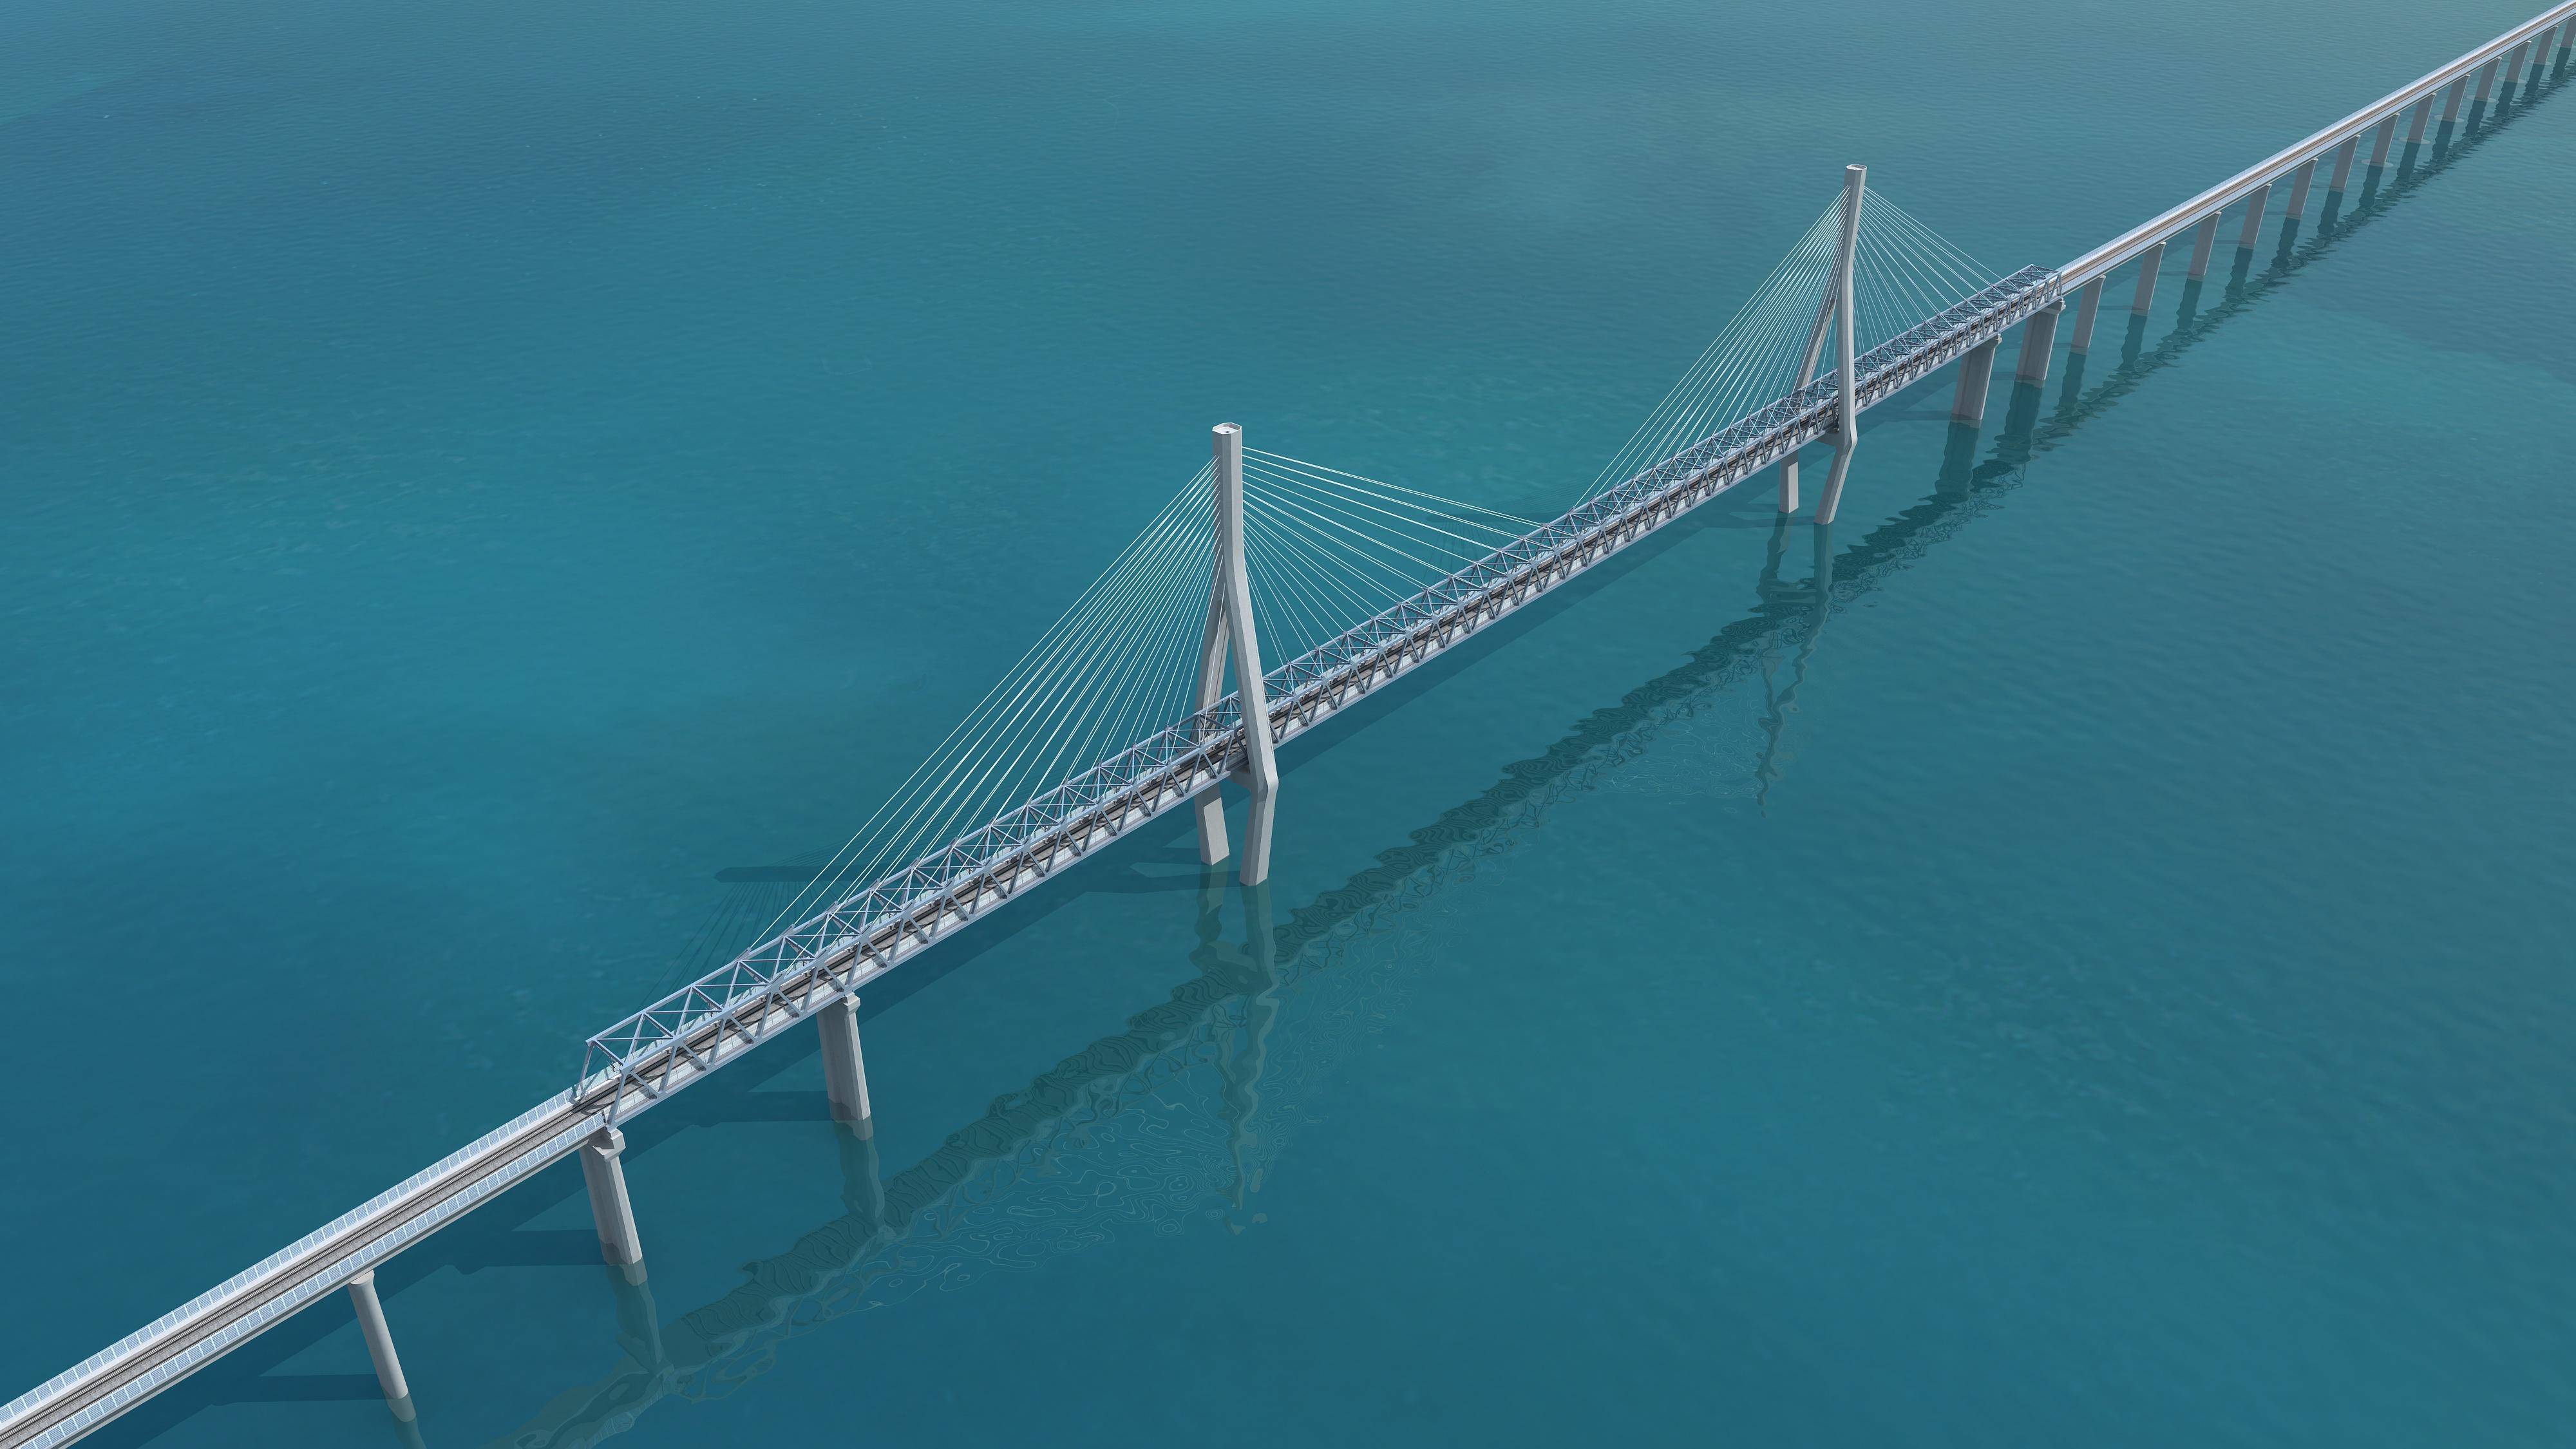 杭州湾跨海大桥设计图图片